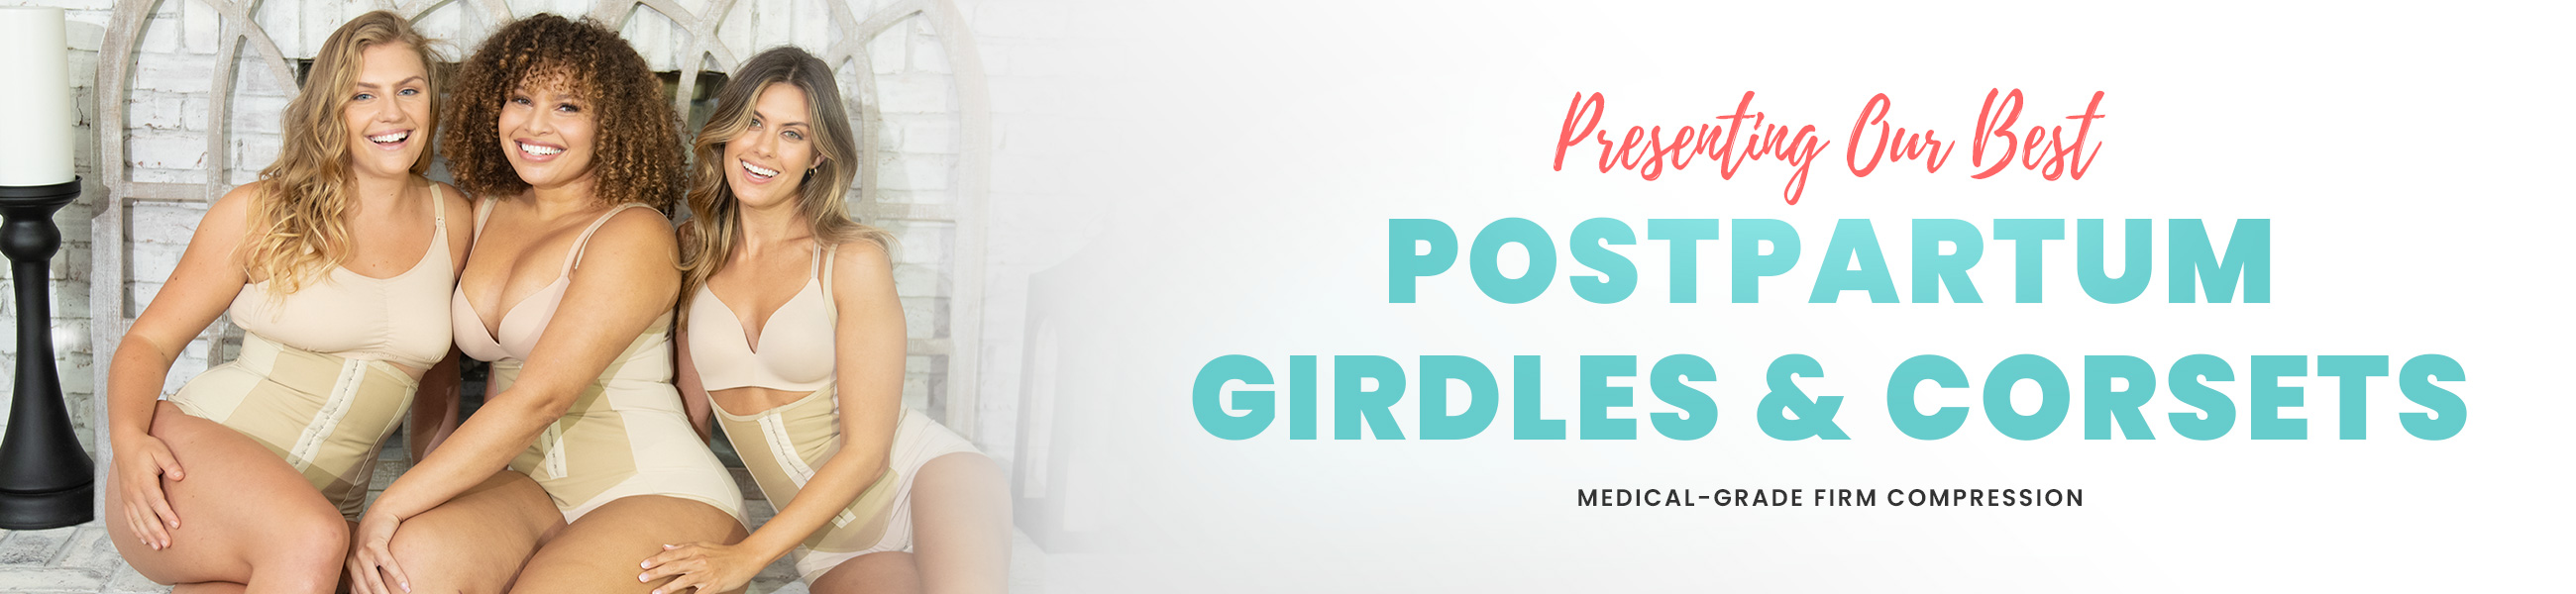 Best Postpartum Girdles